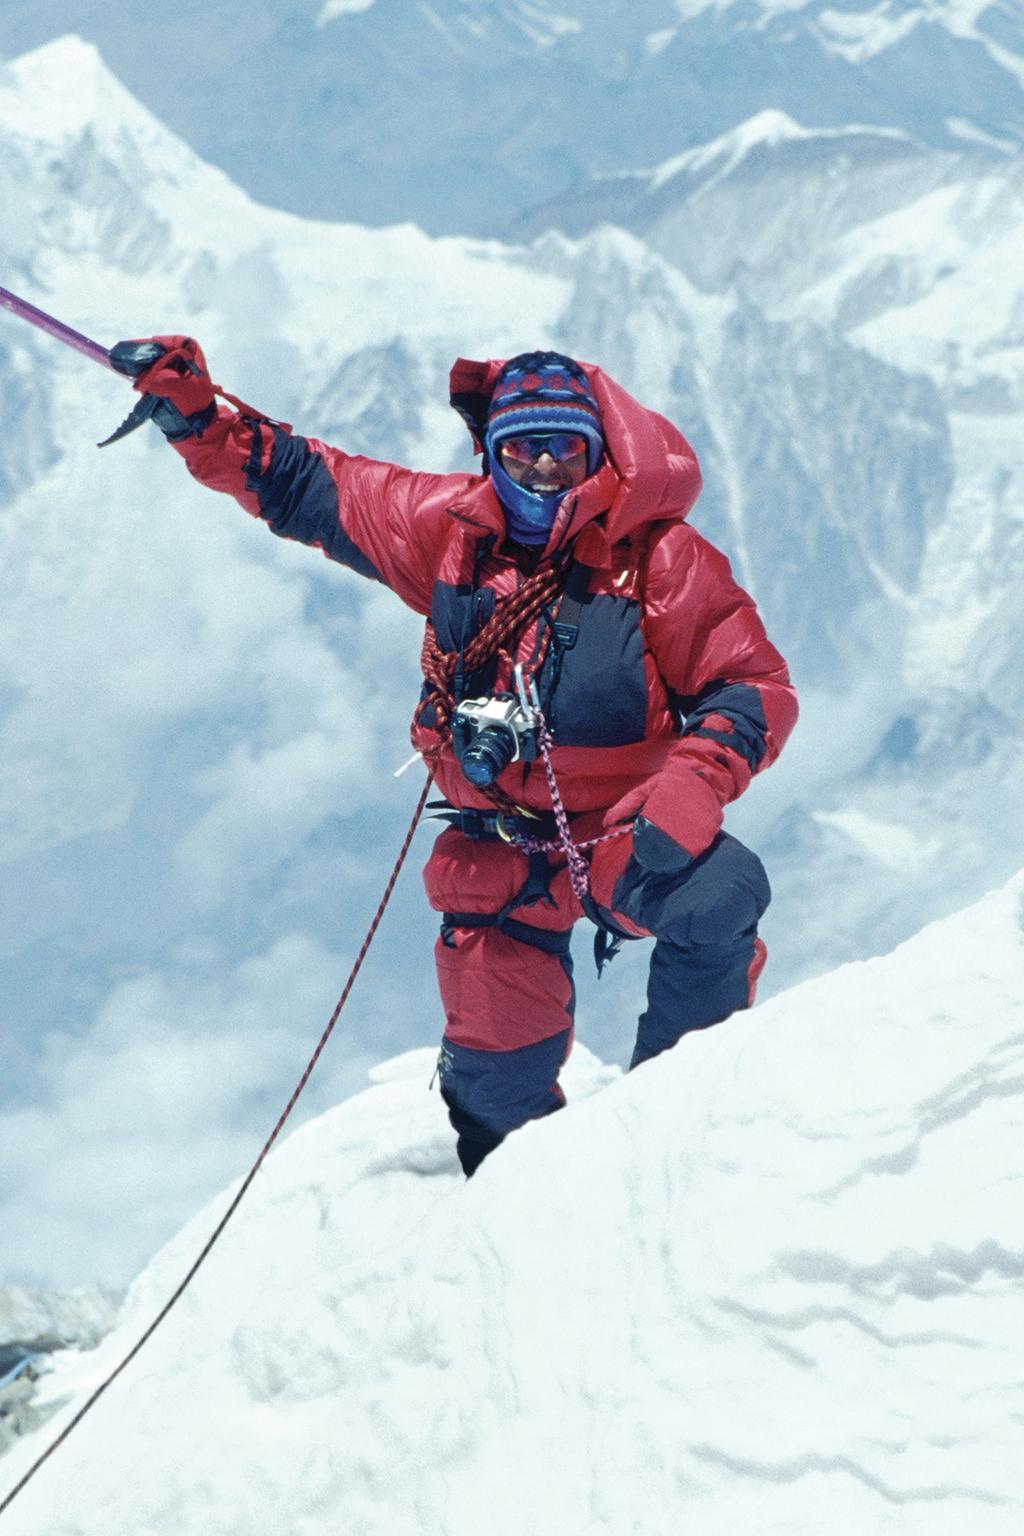 Ed Viesturs 14 X 8 000 Ed Viesturs es el principal alpinista estadounidense de grandes alturas, ha escalado muchas de las cimas más difíciles del mundo, así como el Monte Everest en siete ocasiones.